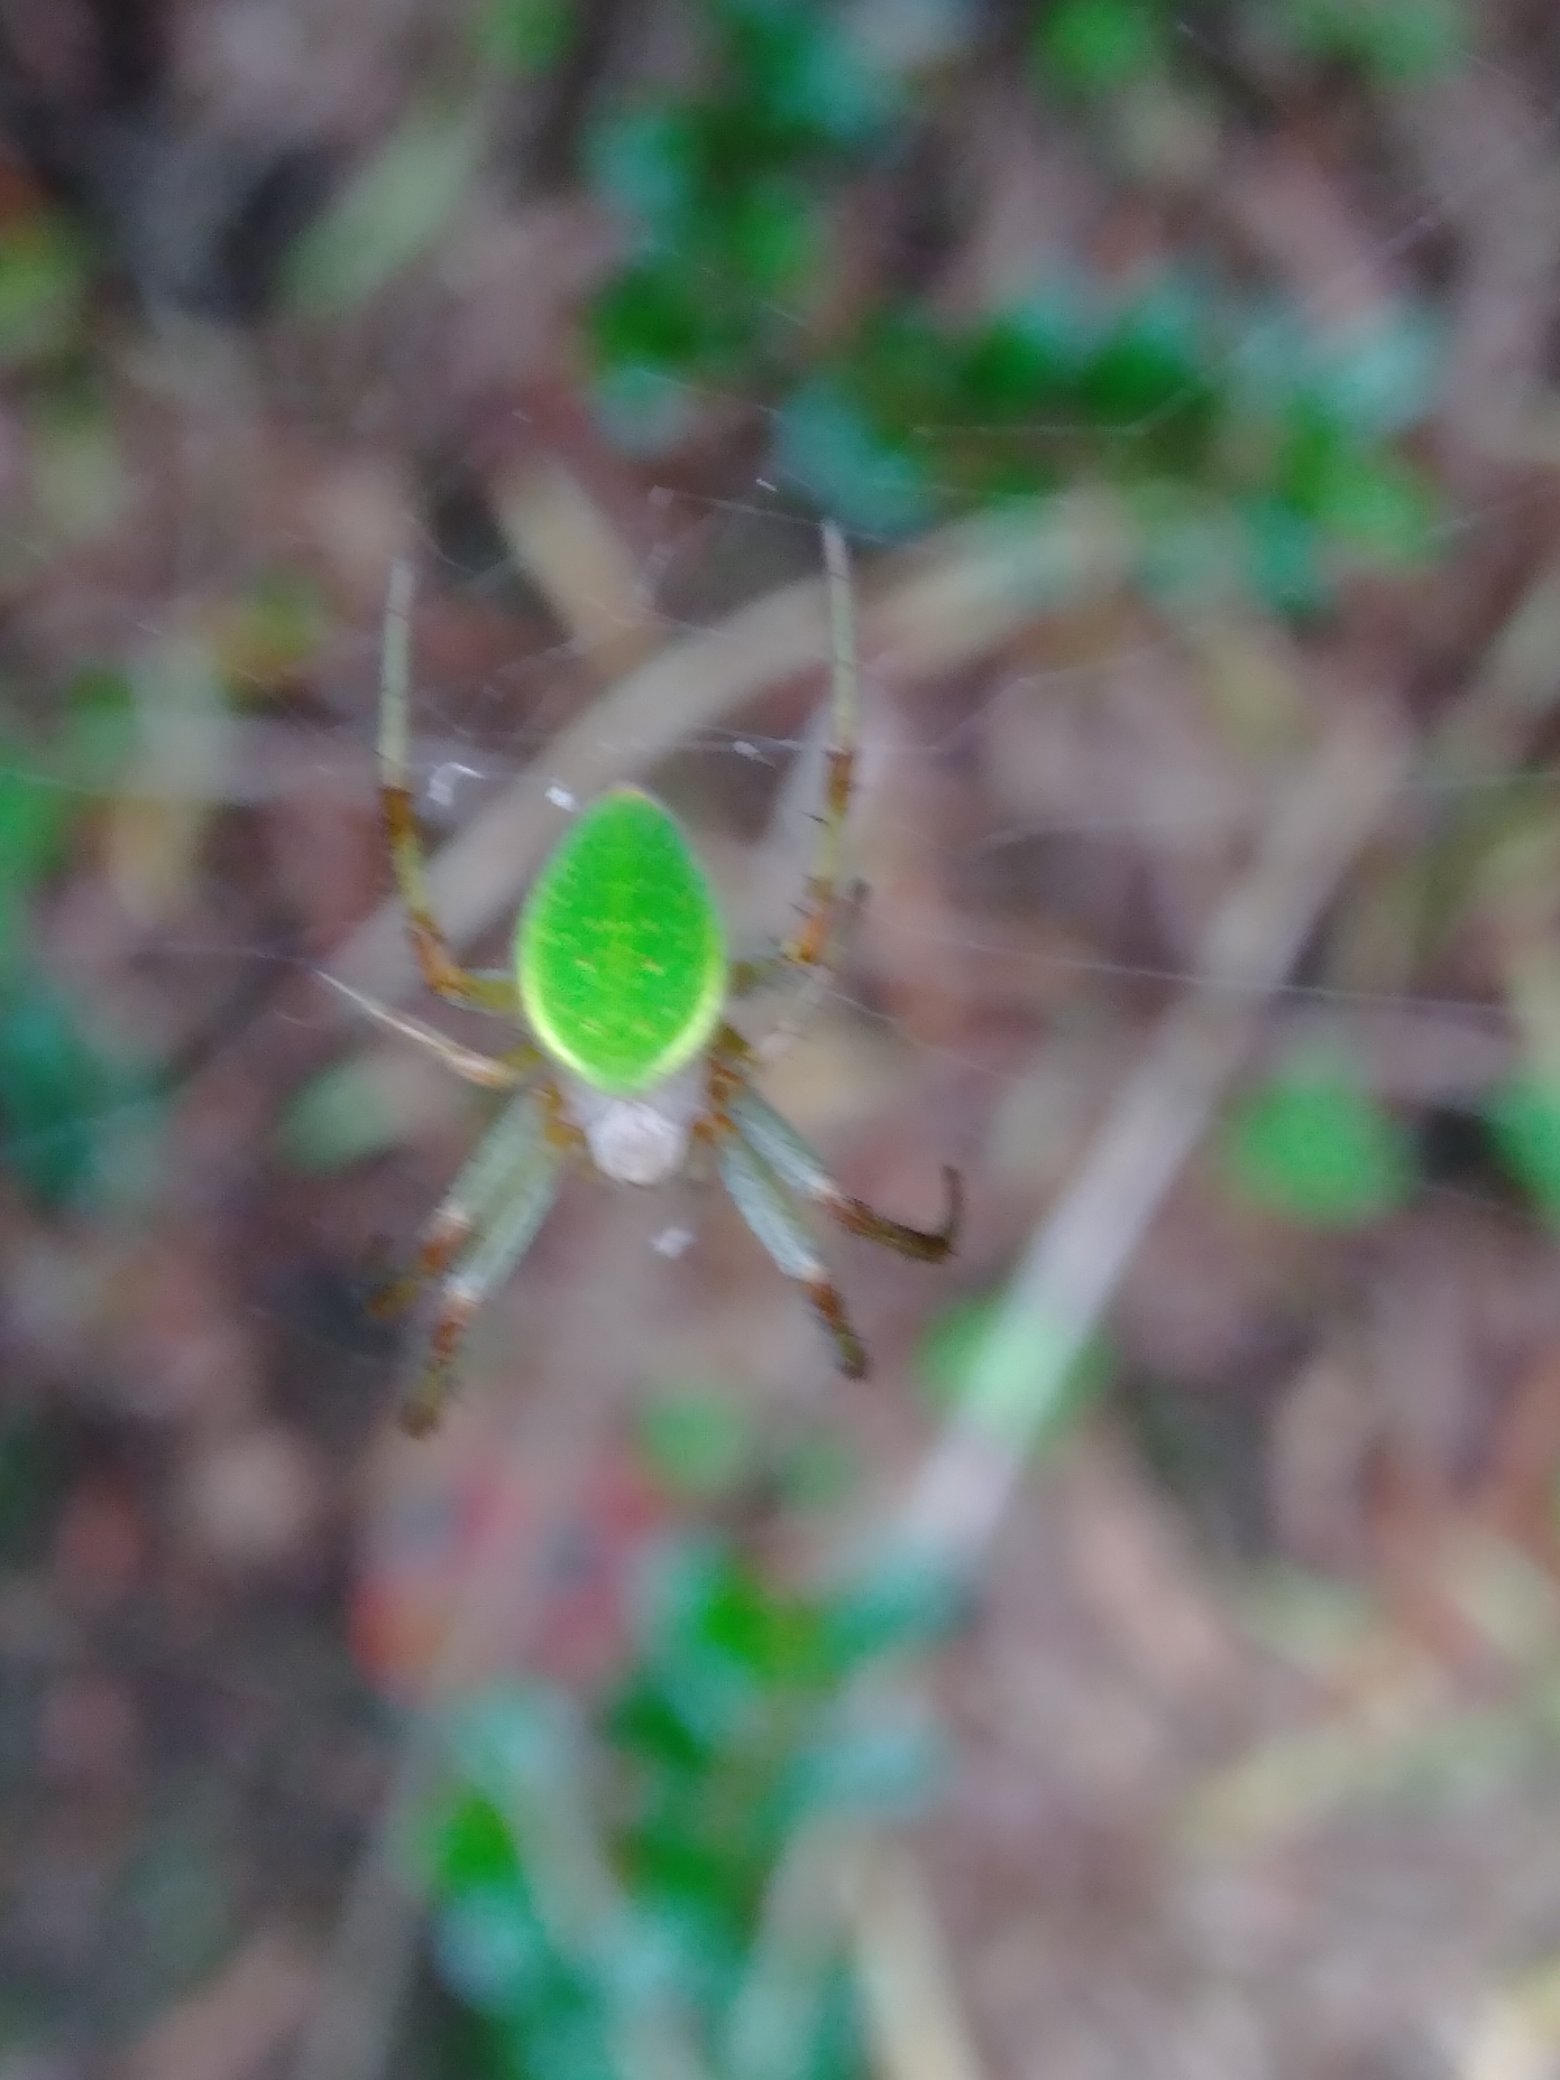 ねえね 猫の座布団 小さい綺麗な緑の蜘蛛 名前はなあに 教えて虫の人 T Co Eeszvwldv5 Twitter